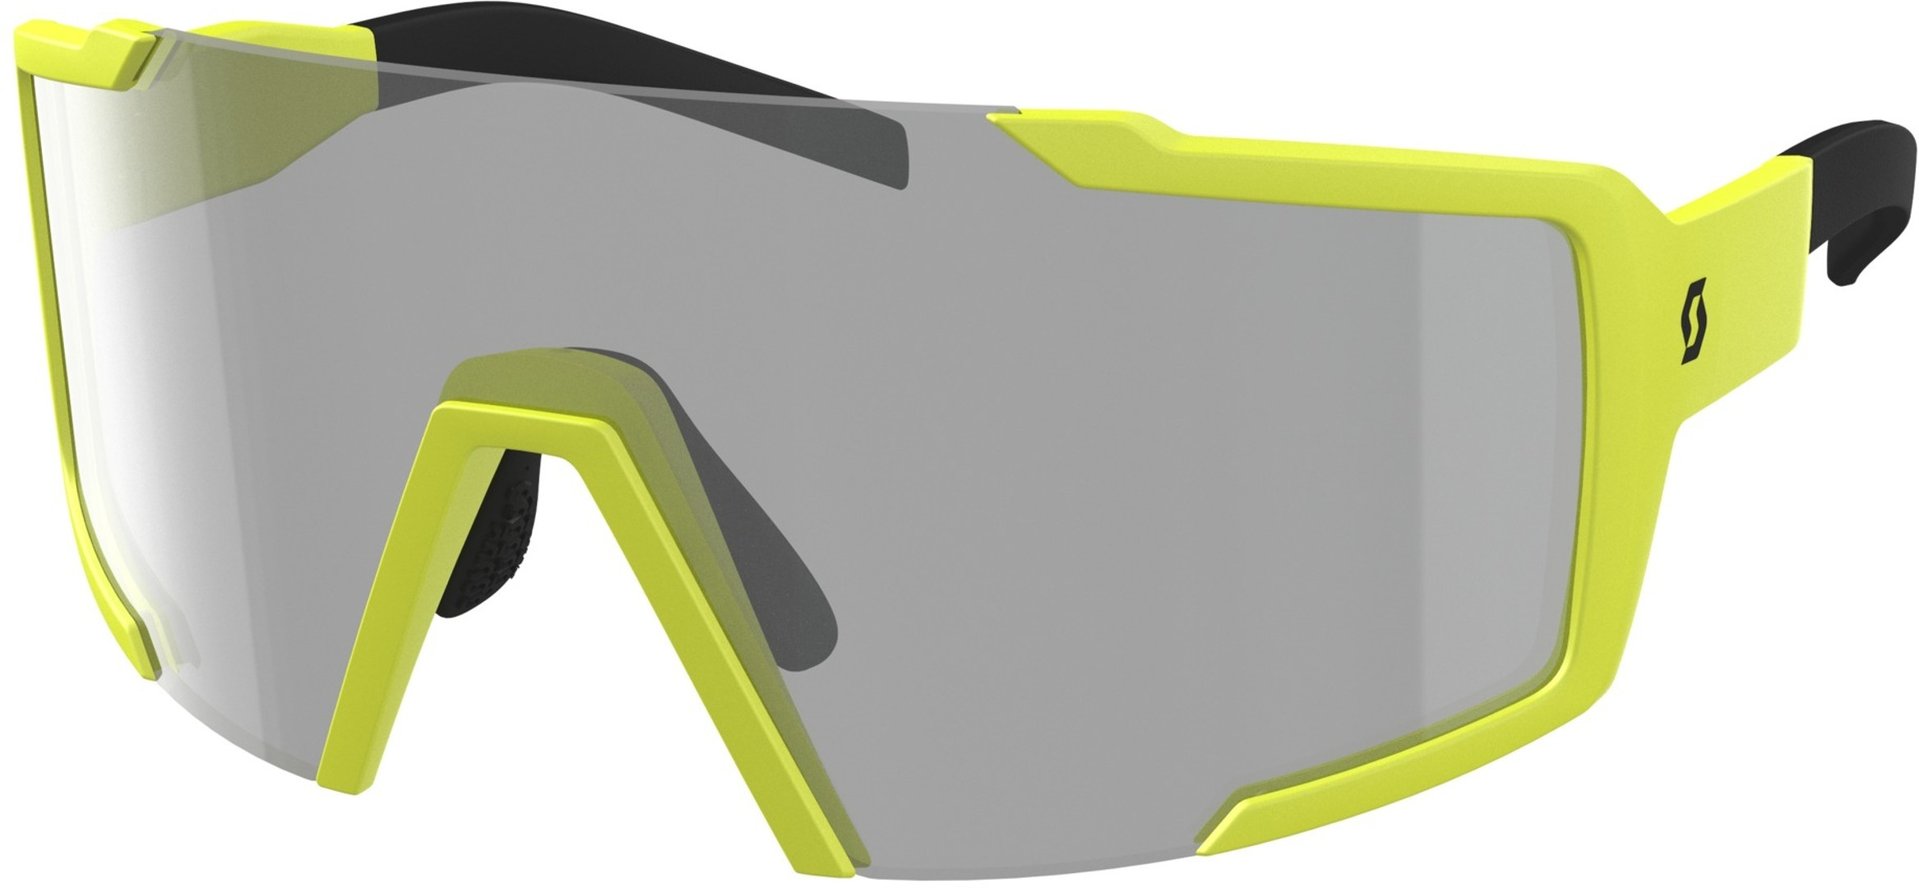 Солнцезащитные очки Scott Shield LS с регулируемой носовой накладкой, желтый/серый солнцезащитные очки eschenbach серый